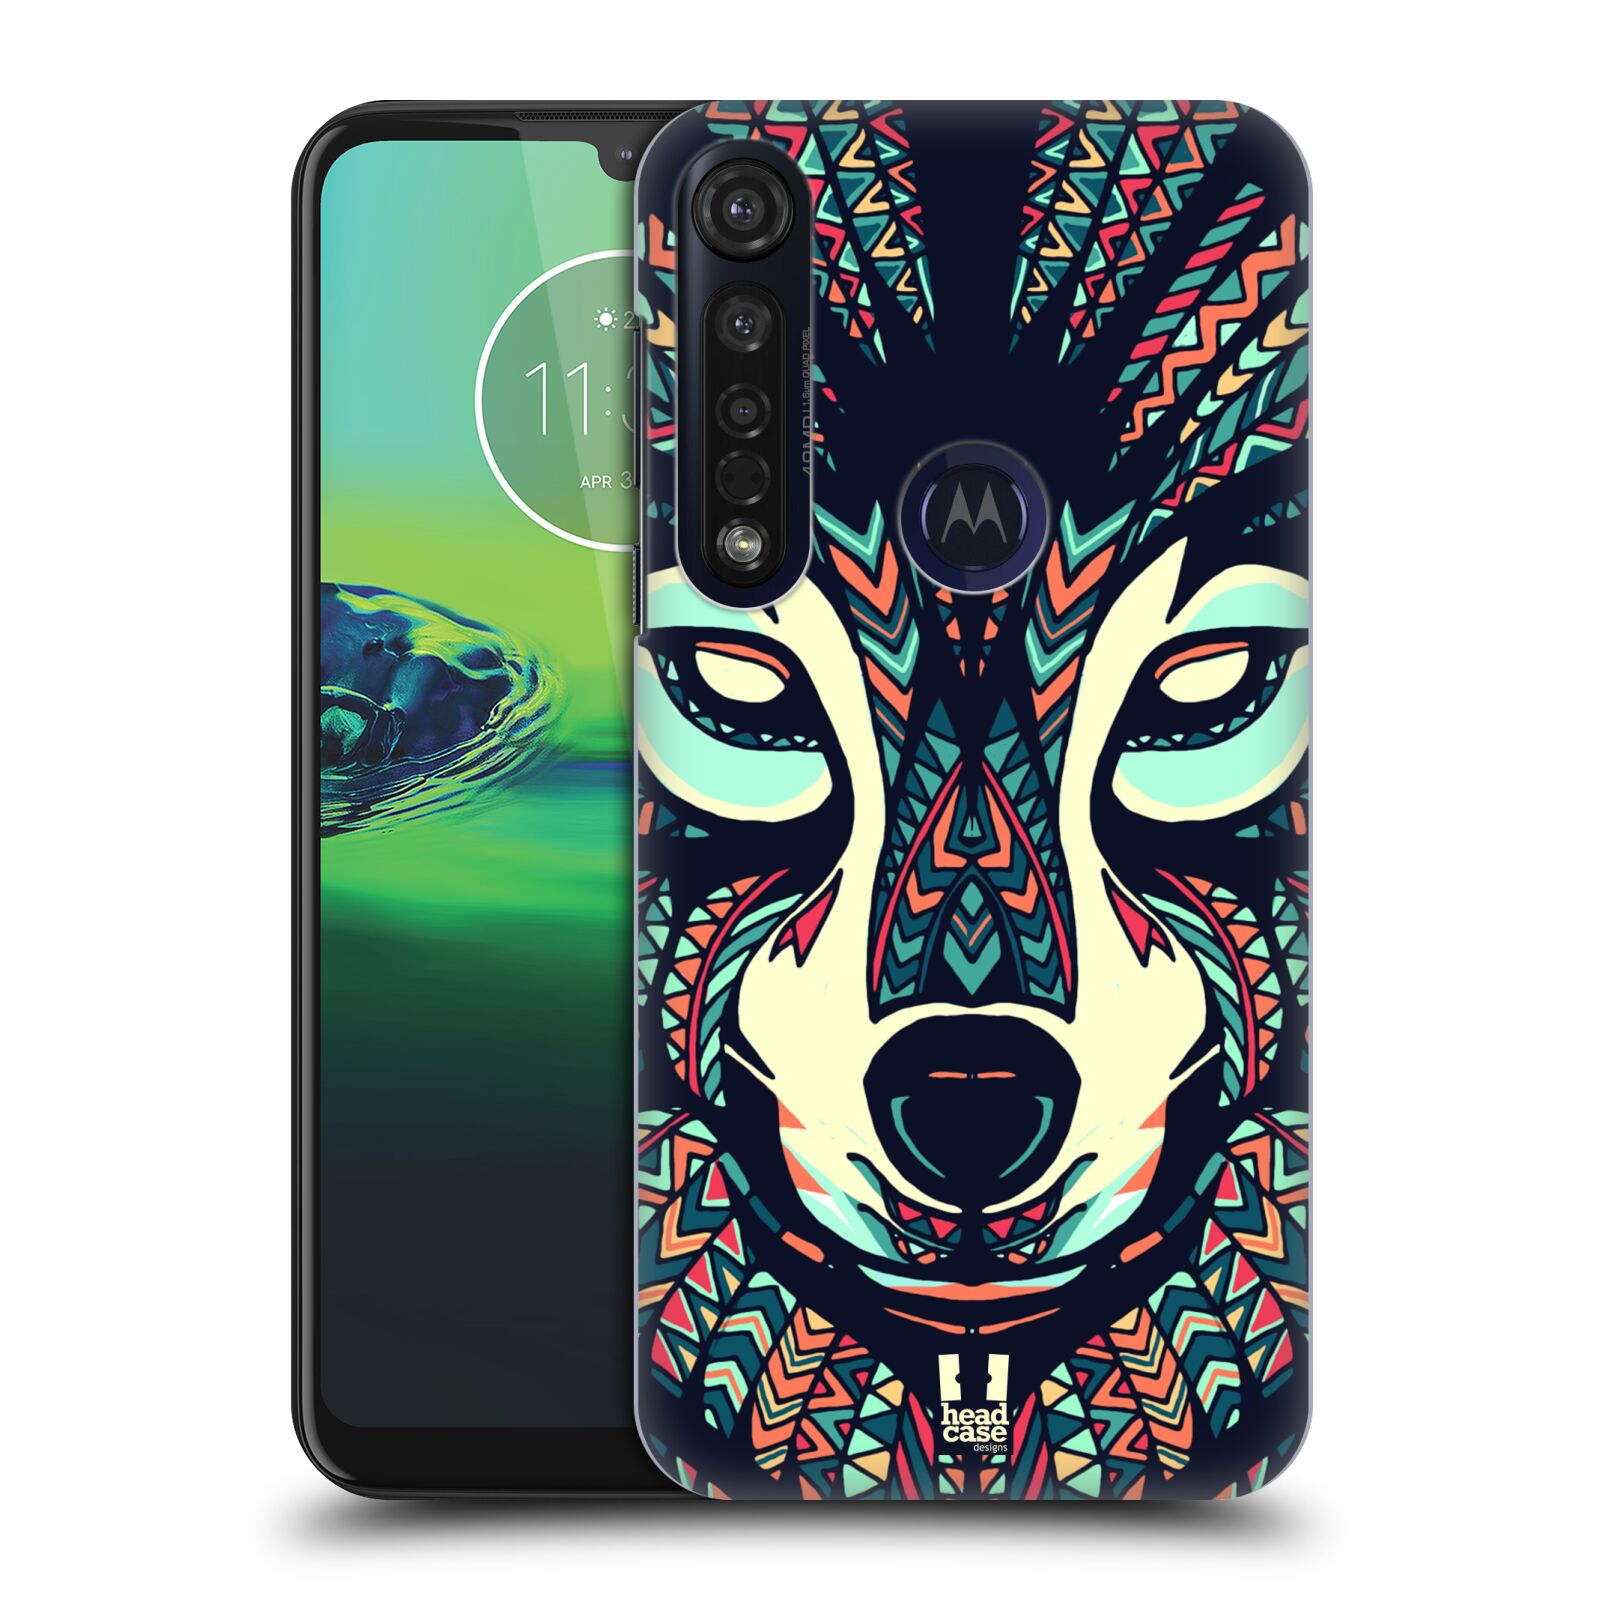 Pouzdro na mobil Motorola Moto G8 PLUS - HEAD CASE - vzor Aztécký motiv zvíře 3 vlk